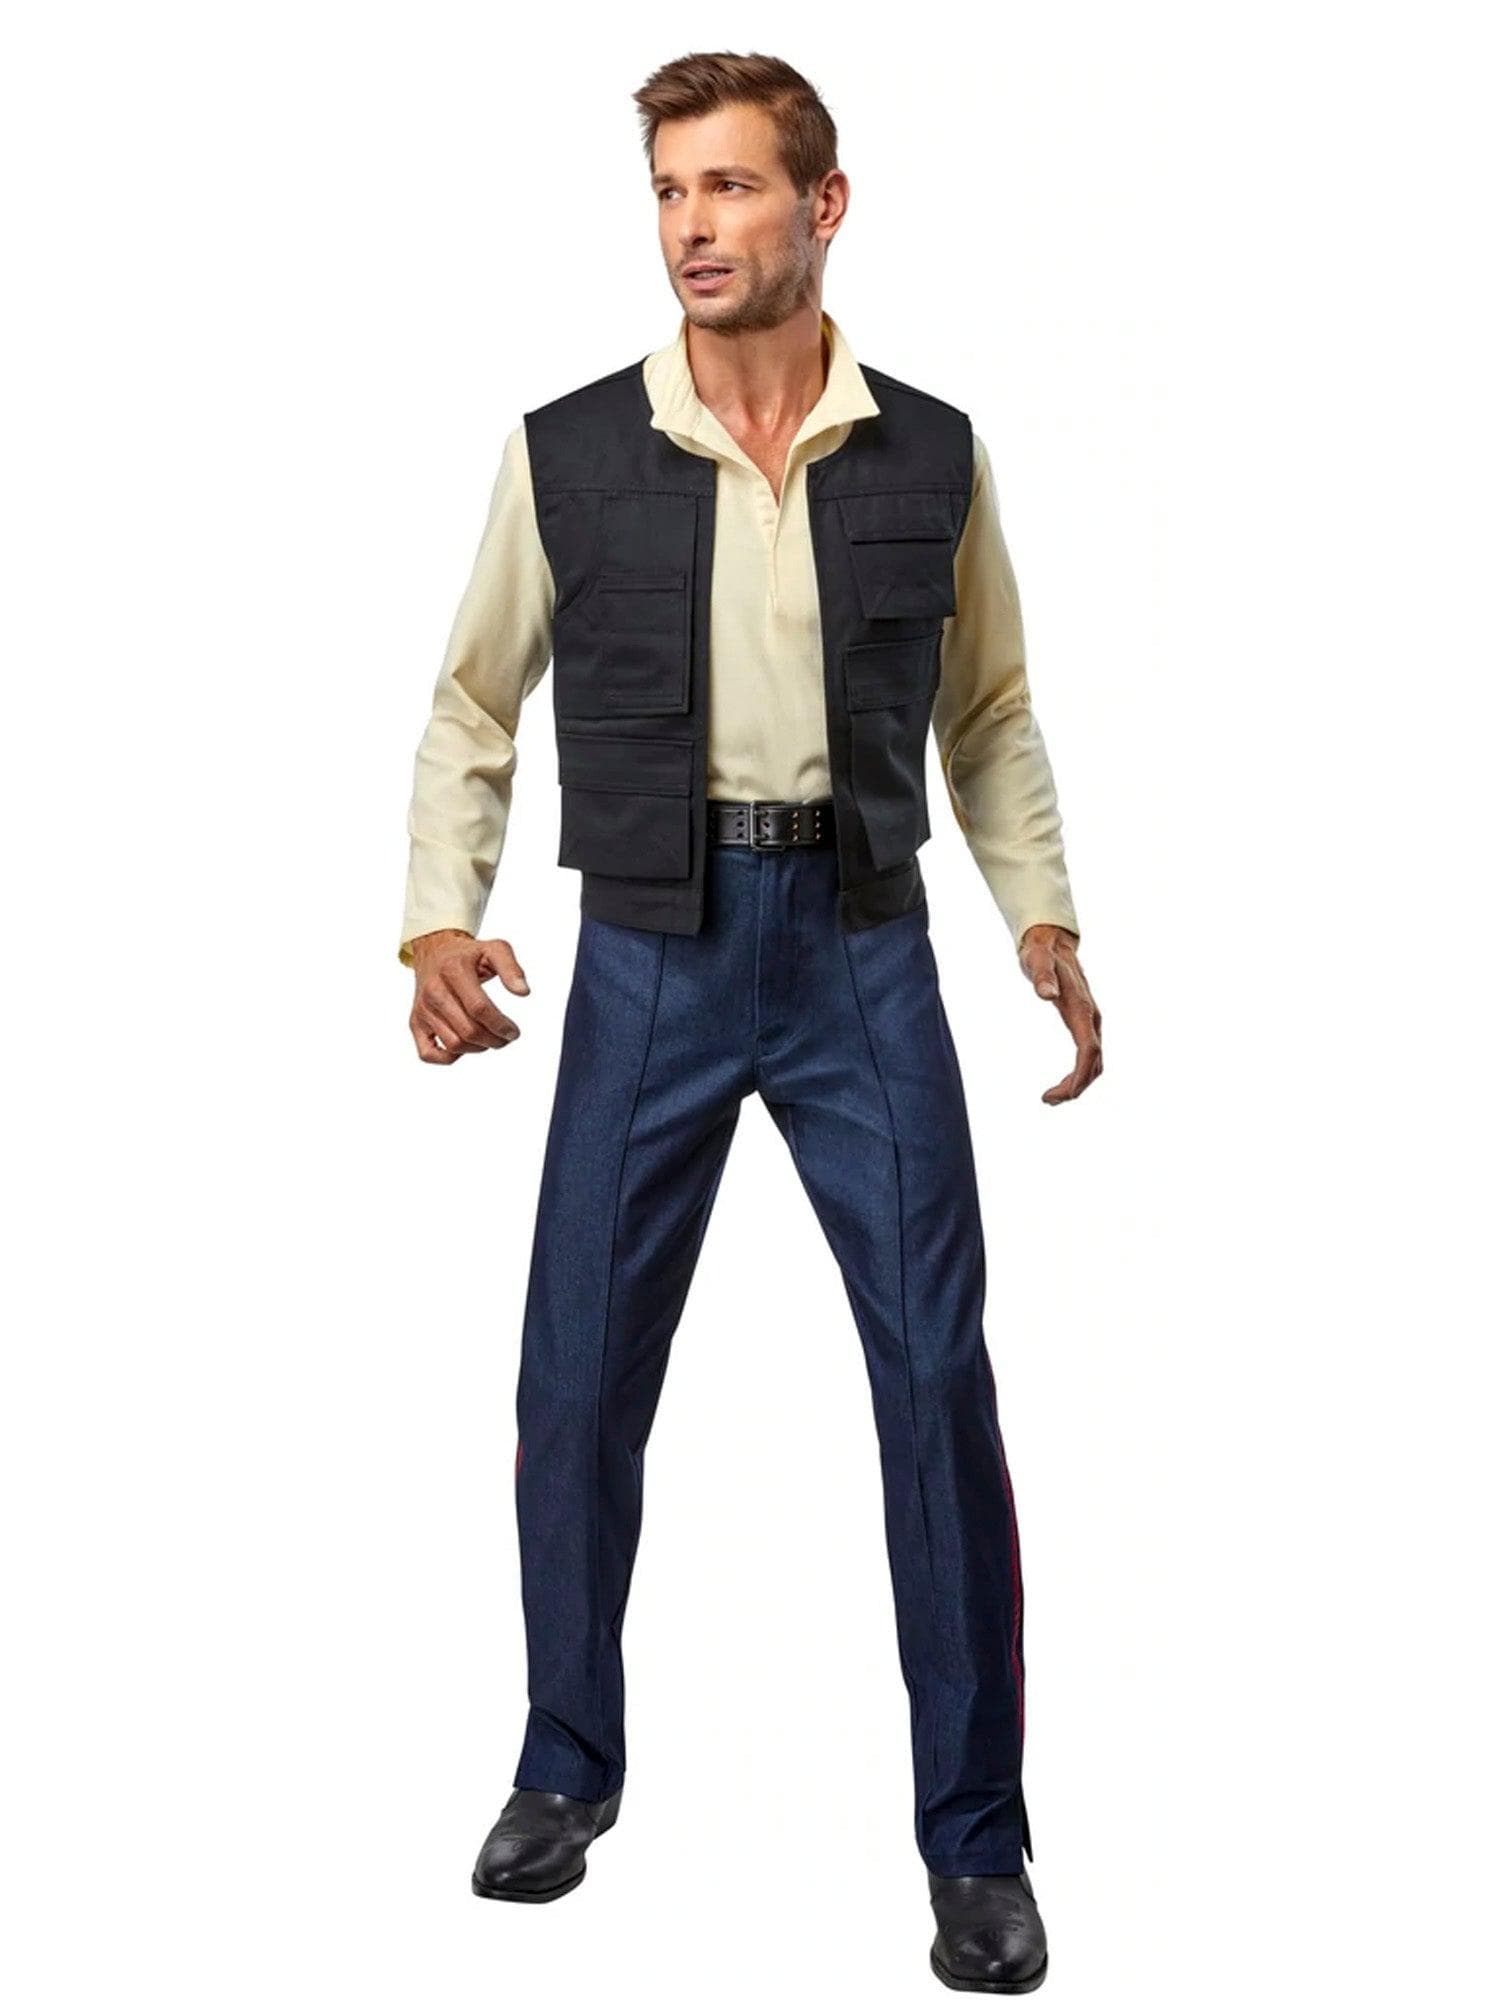 Denuo Novo Star Wars Han Solo Signature Line Vest - costumes.com